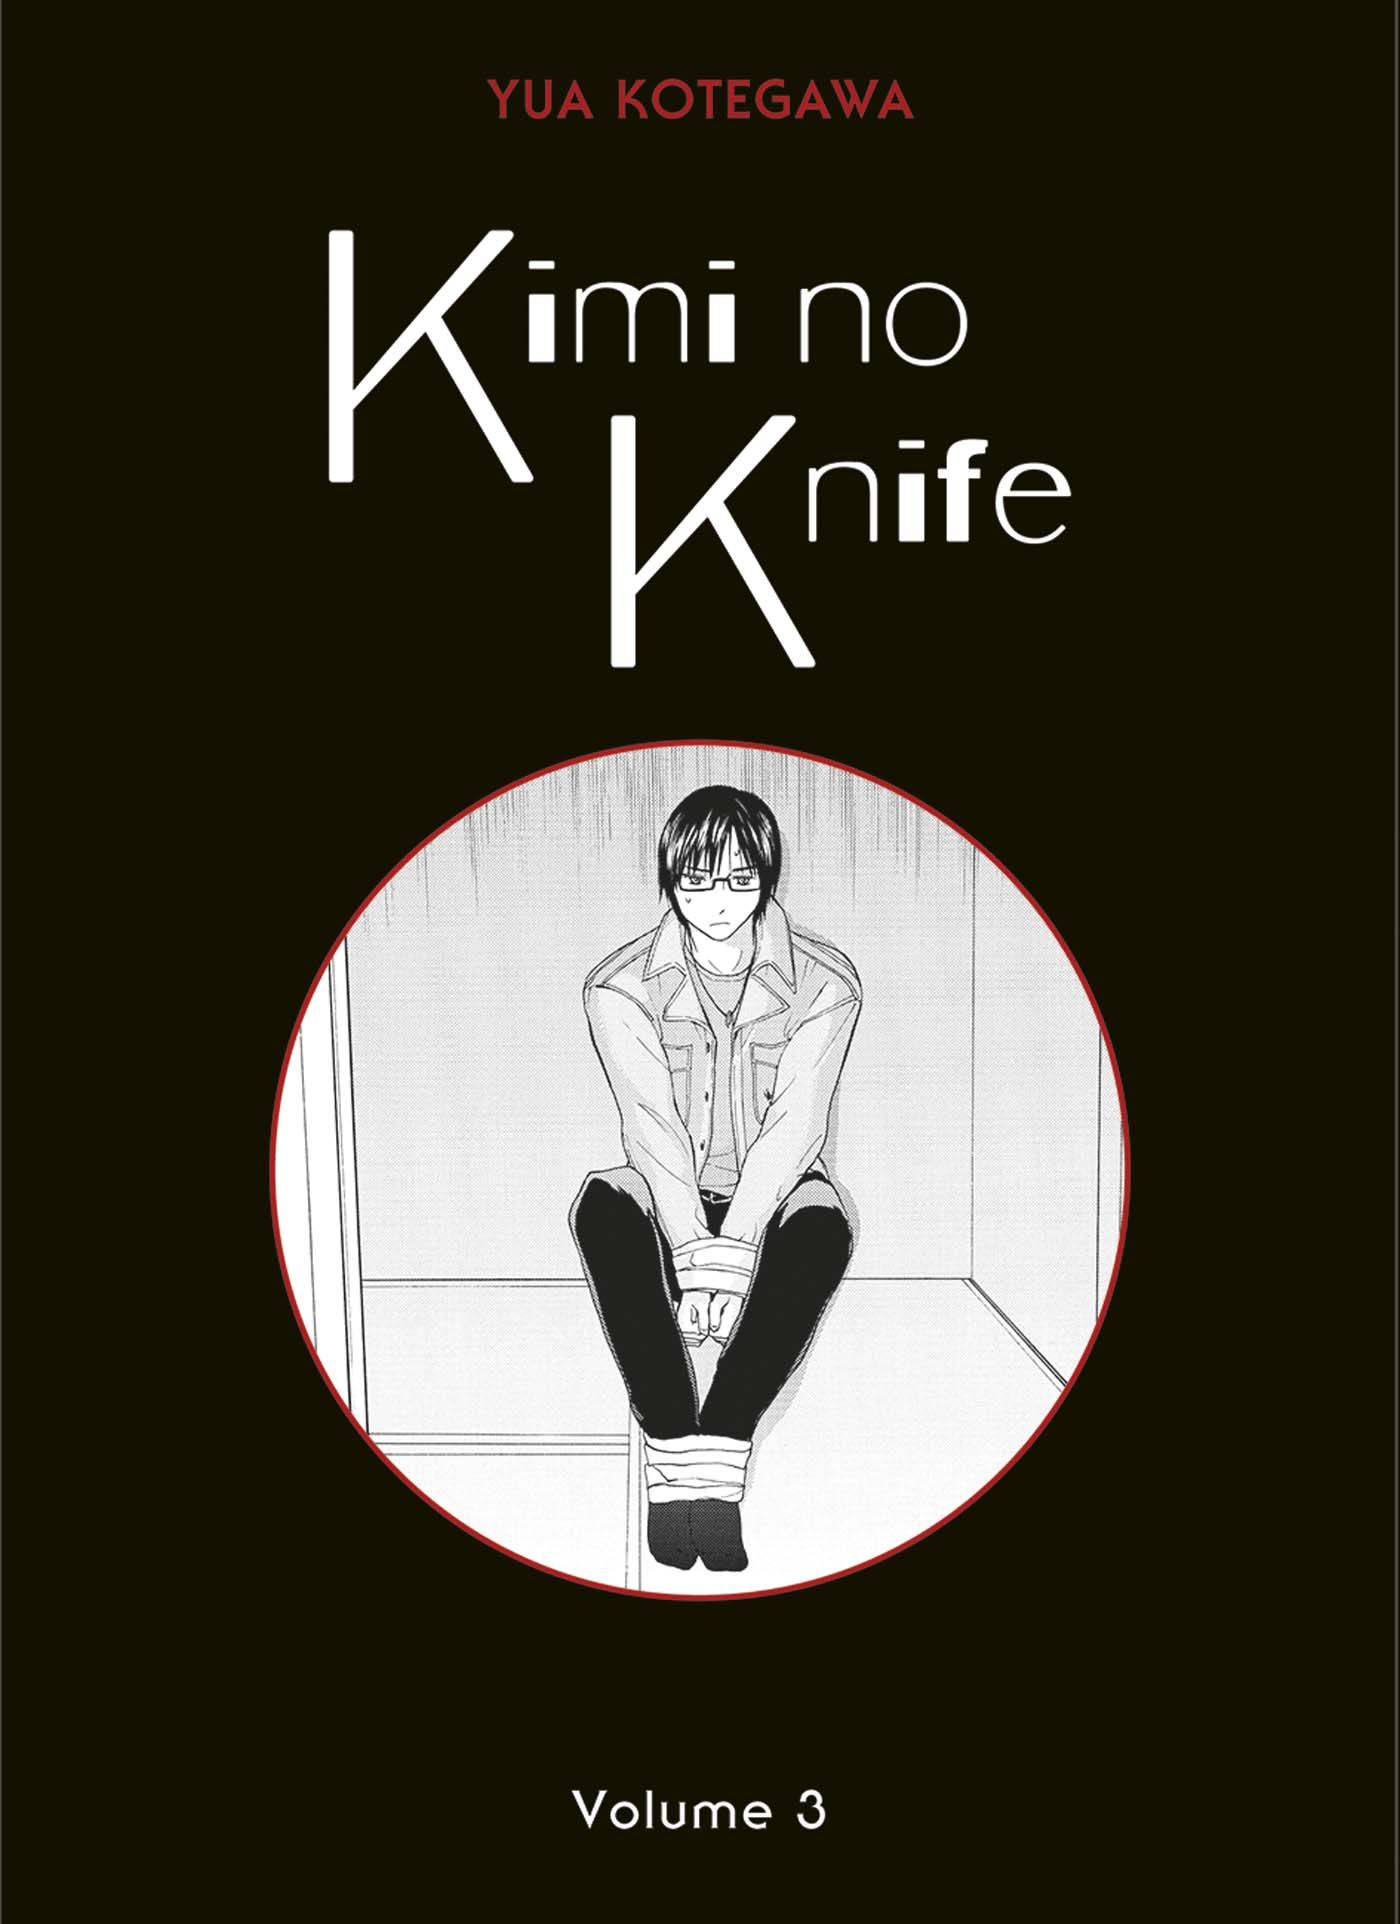 Kimi no Knife Vol.3